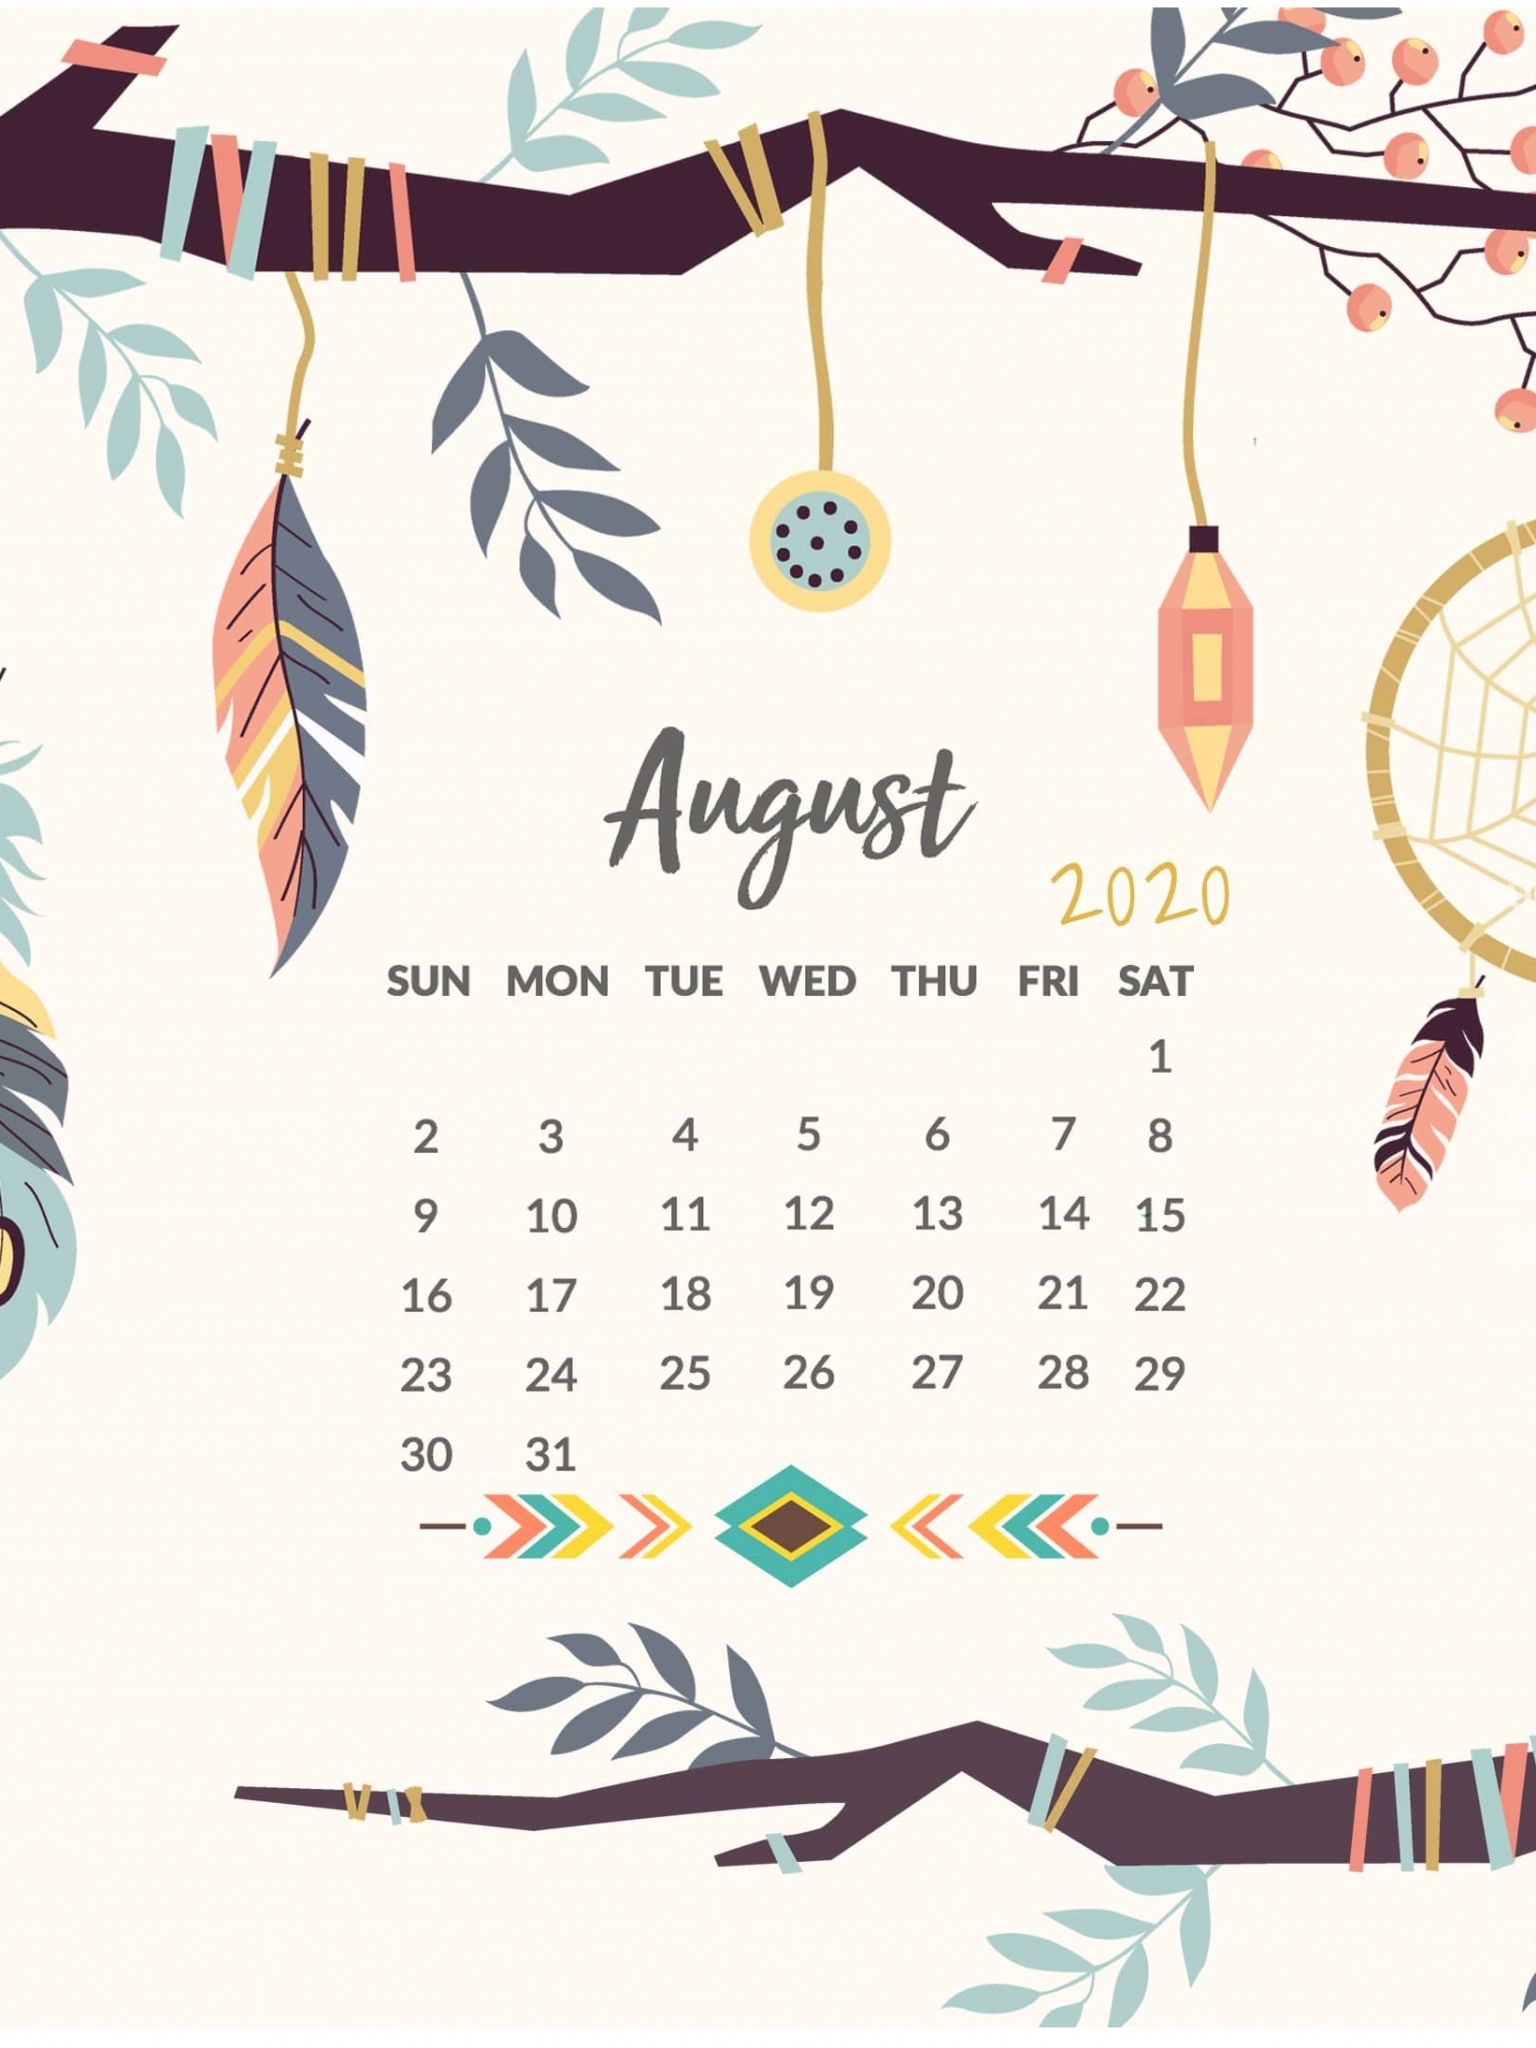 August calendar wallpaper for iphone calendar wallpaper august calendar calendar printables